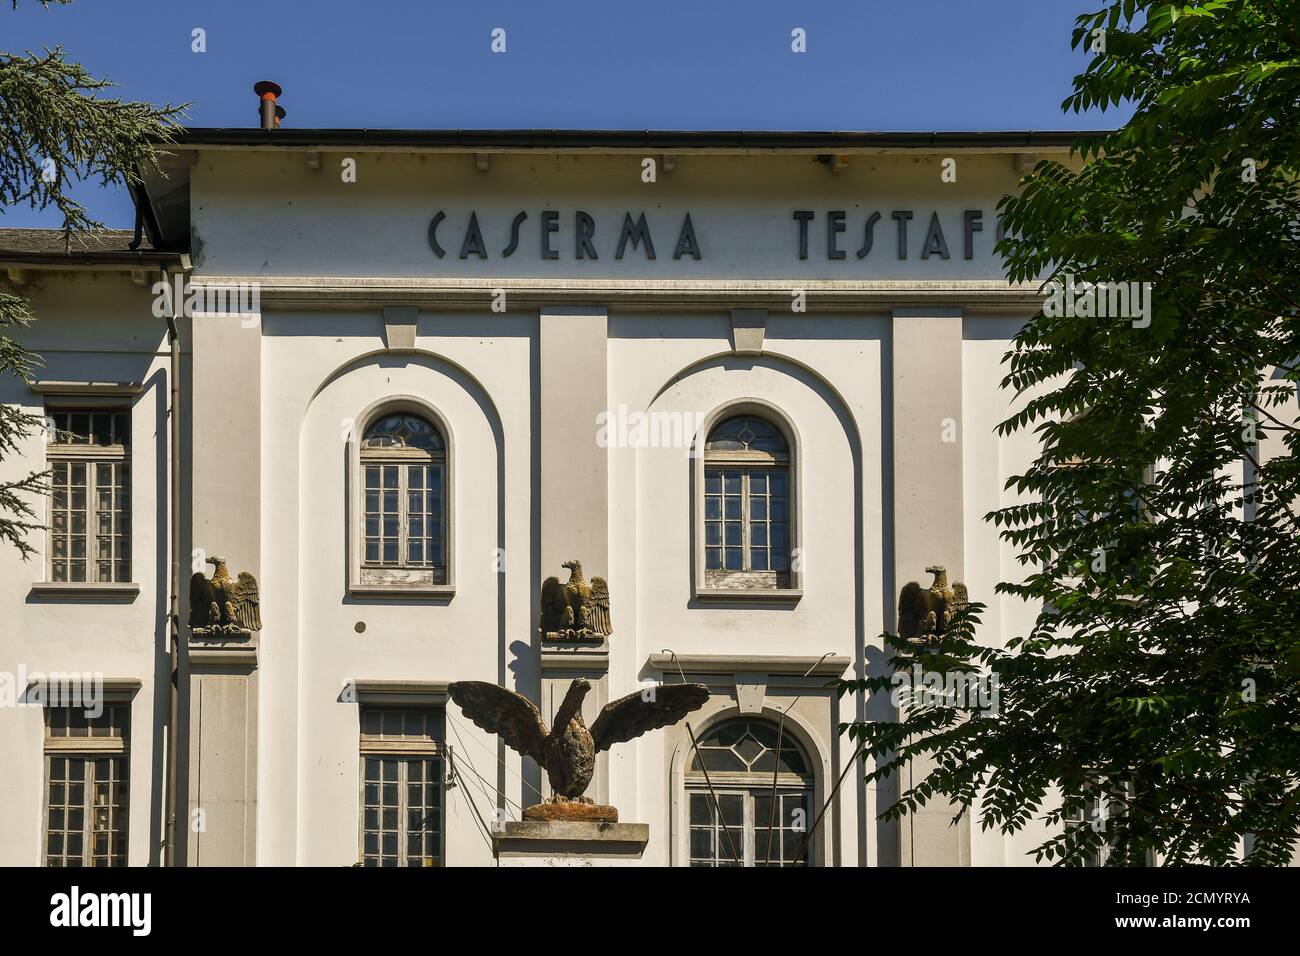 Facciata di Caserma Testafochi, una caserma militare ottocentesca che diventerà il nuovo polo universitario cittadino, Aosta, Valle d'Aosta, Italia Foto Stock